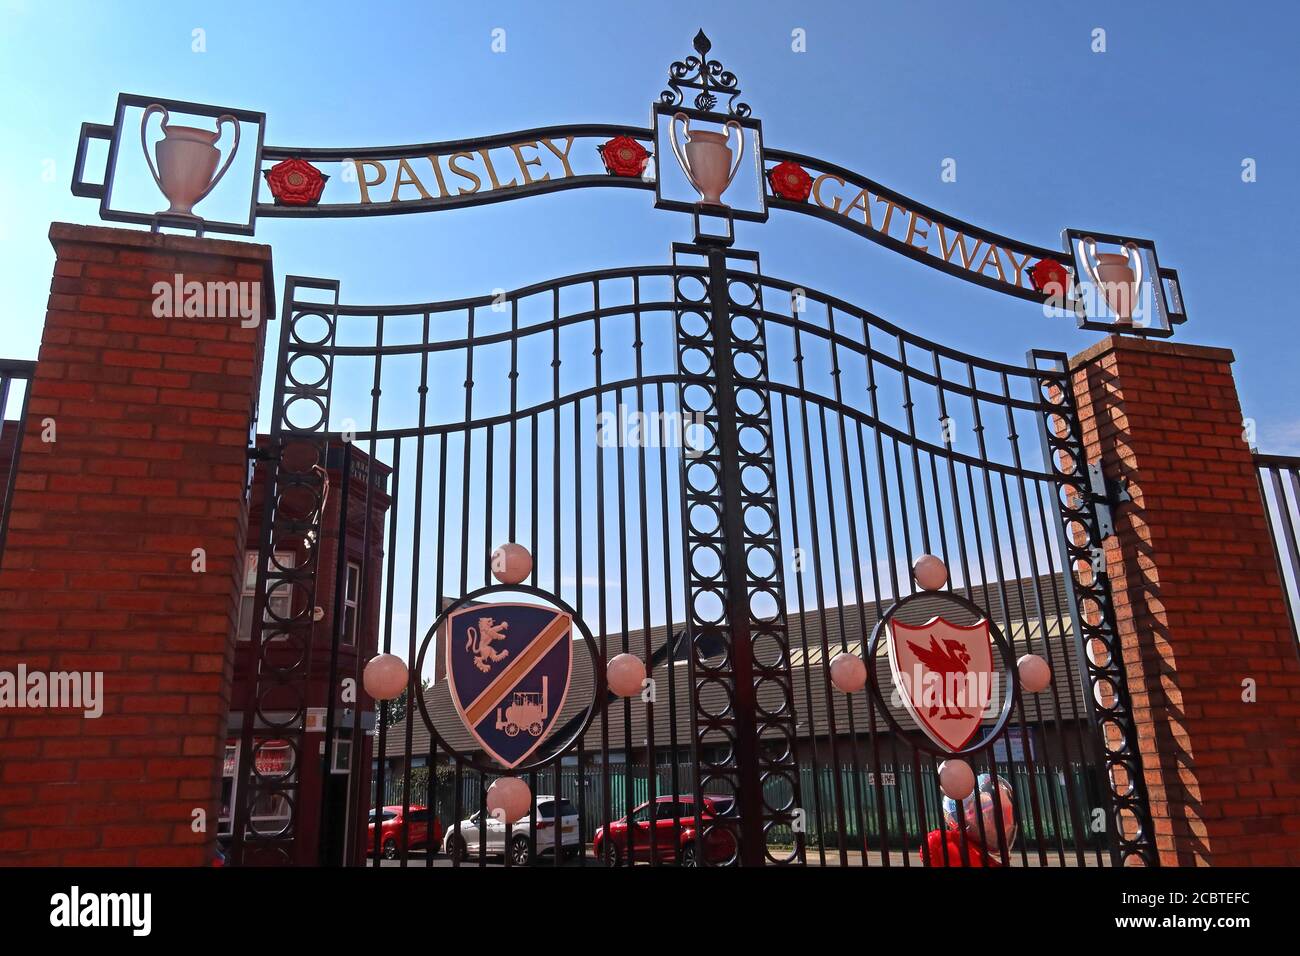 Bob Paisley Gateway Gates, LFC, Liverpool football Club, Anfield, Premier League, Merseyside, nord-ouest de l'Angleterre, Royaume-Uni, L4 2UZ Banque D'Images